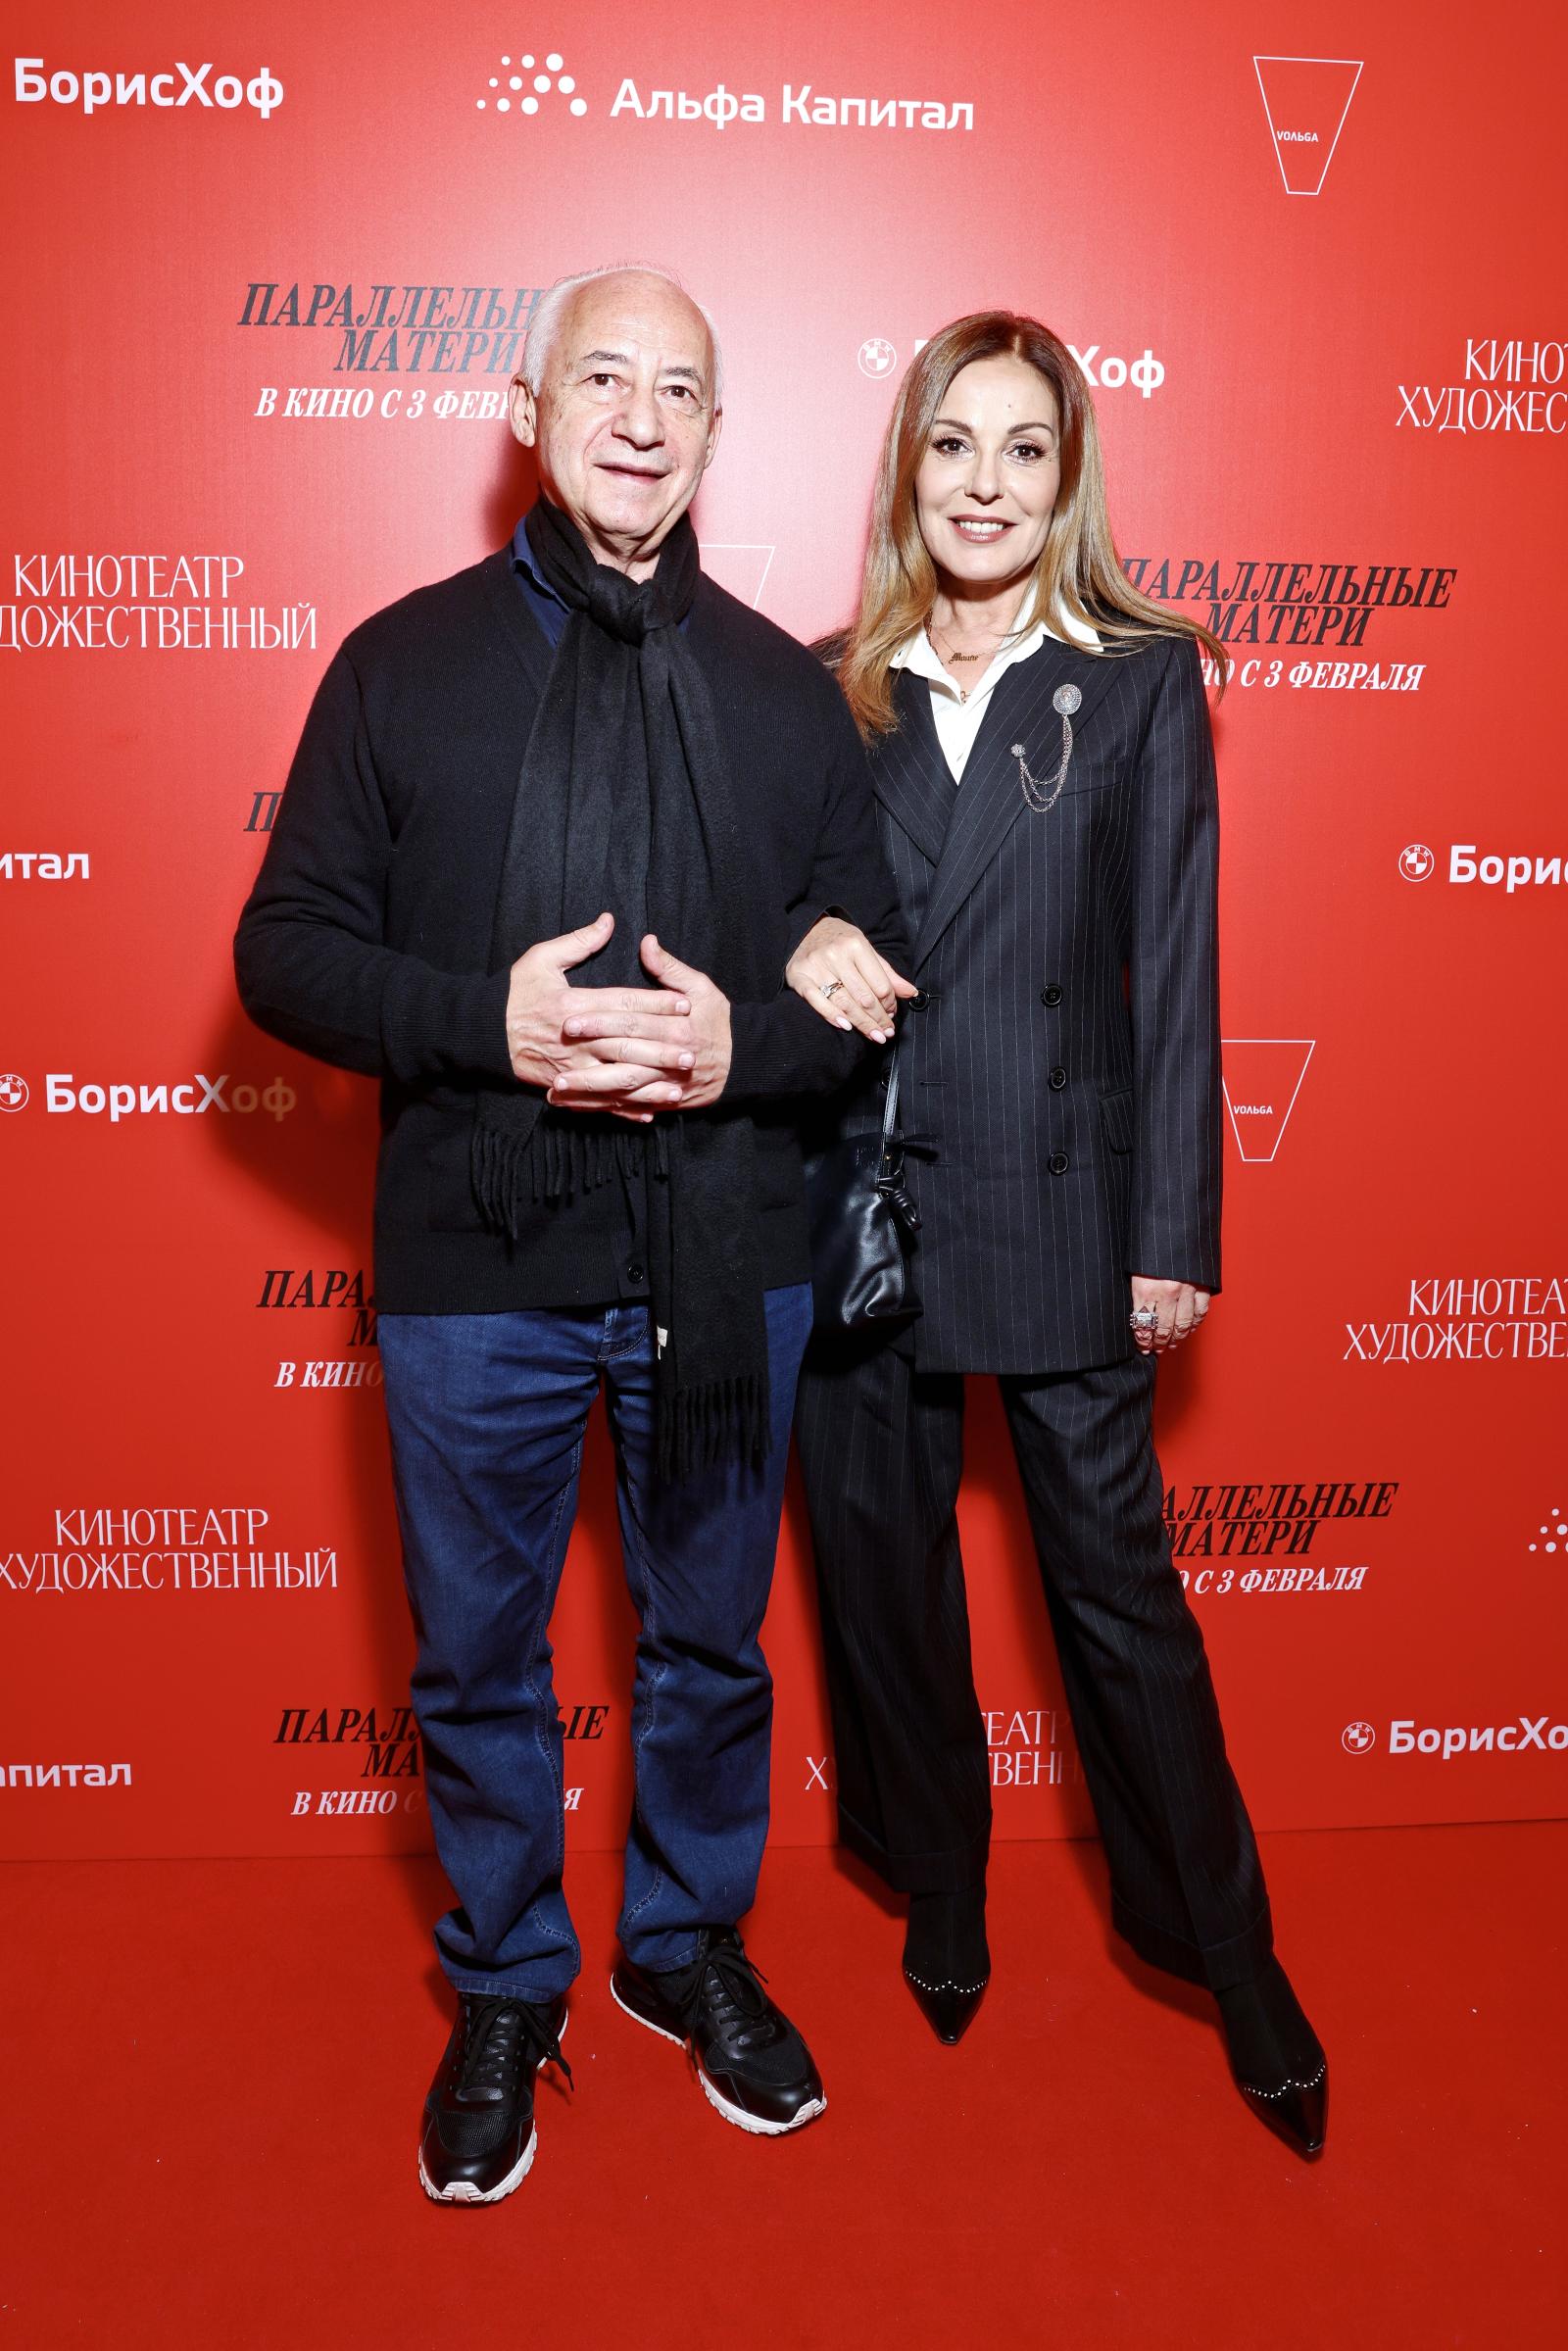 Владимир и Сати Спиваковы, Олеся Судзиловская и другие звезды посетили премьеру «Параллельных матерей»